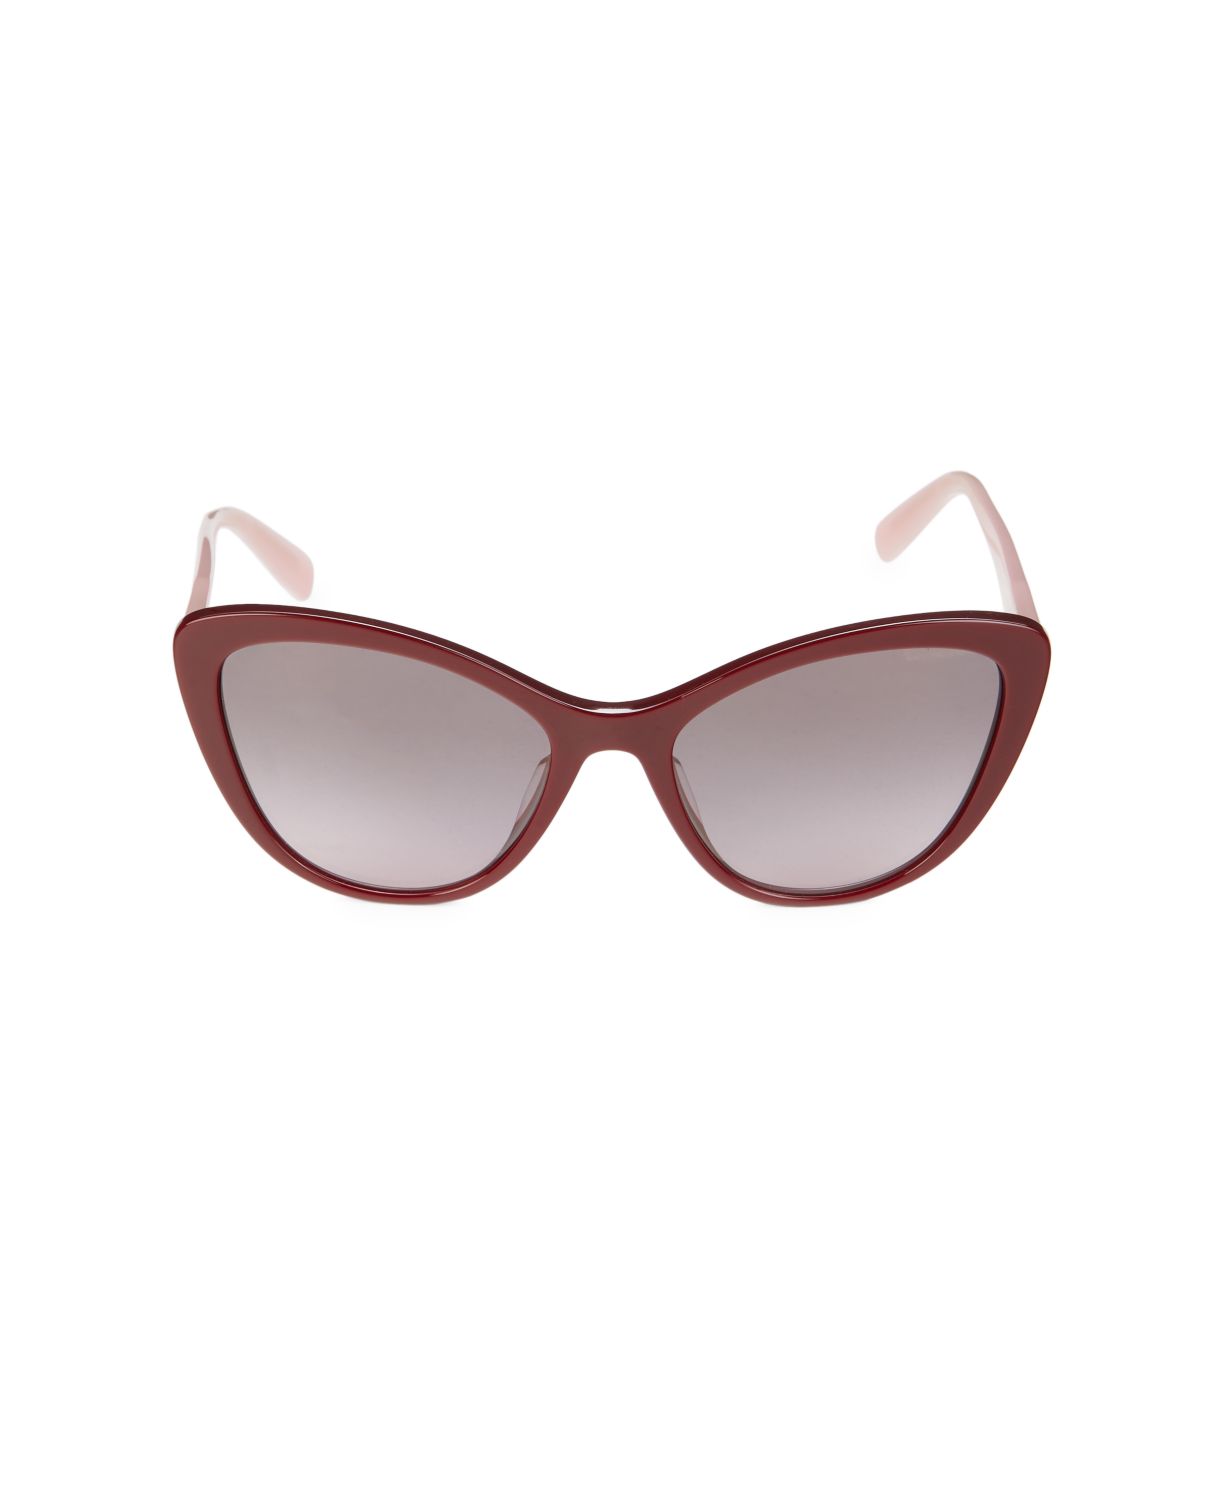 Солнцезащитные очки «кошачий глаз» 55 мм MIU MIU